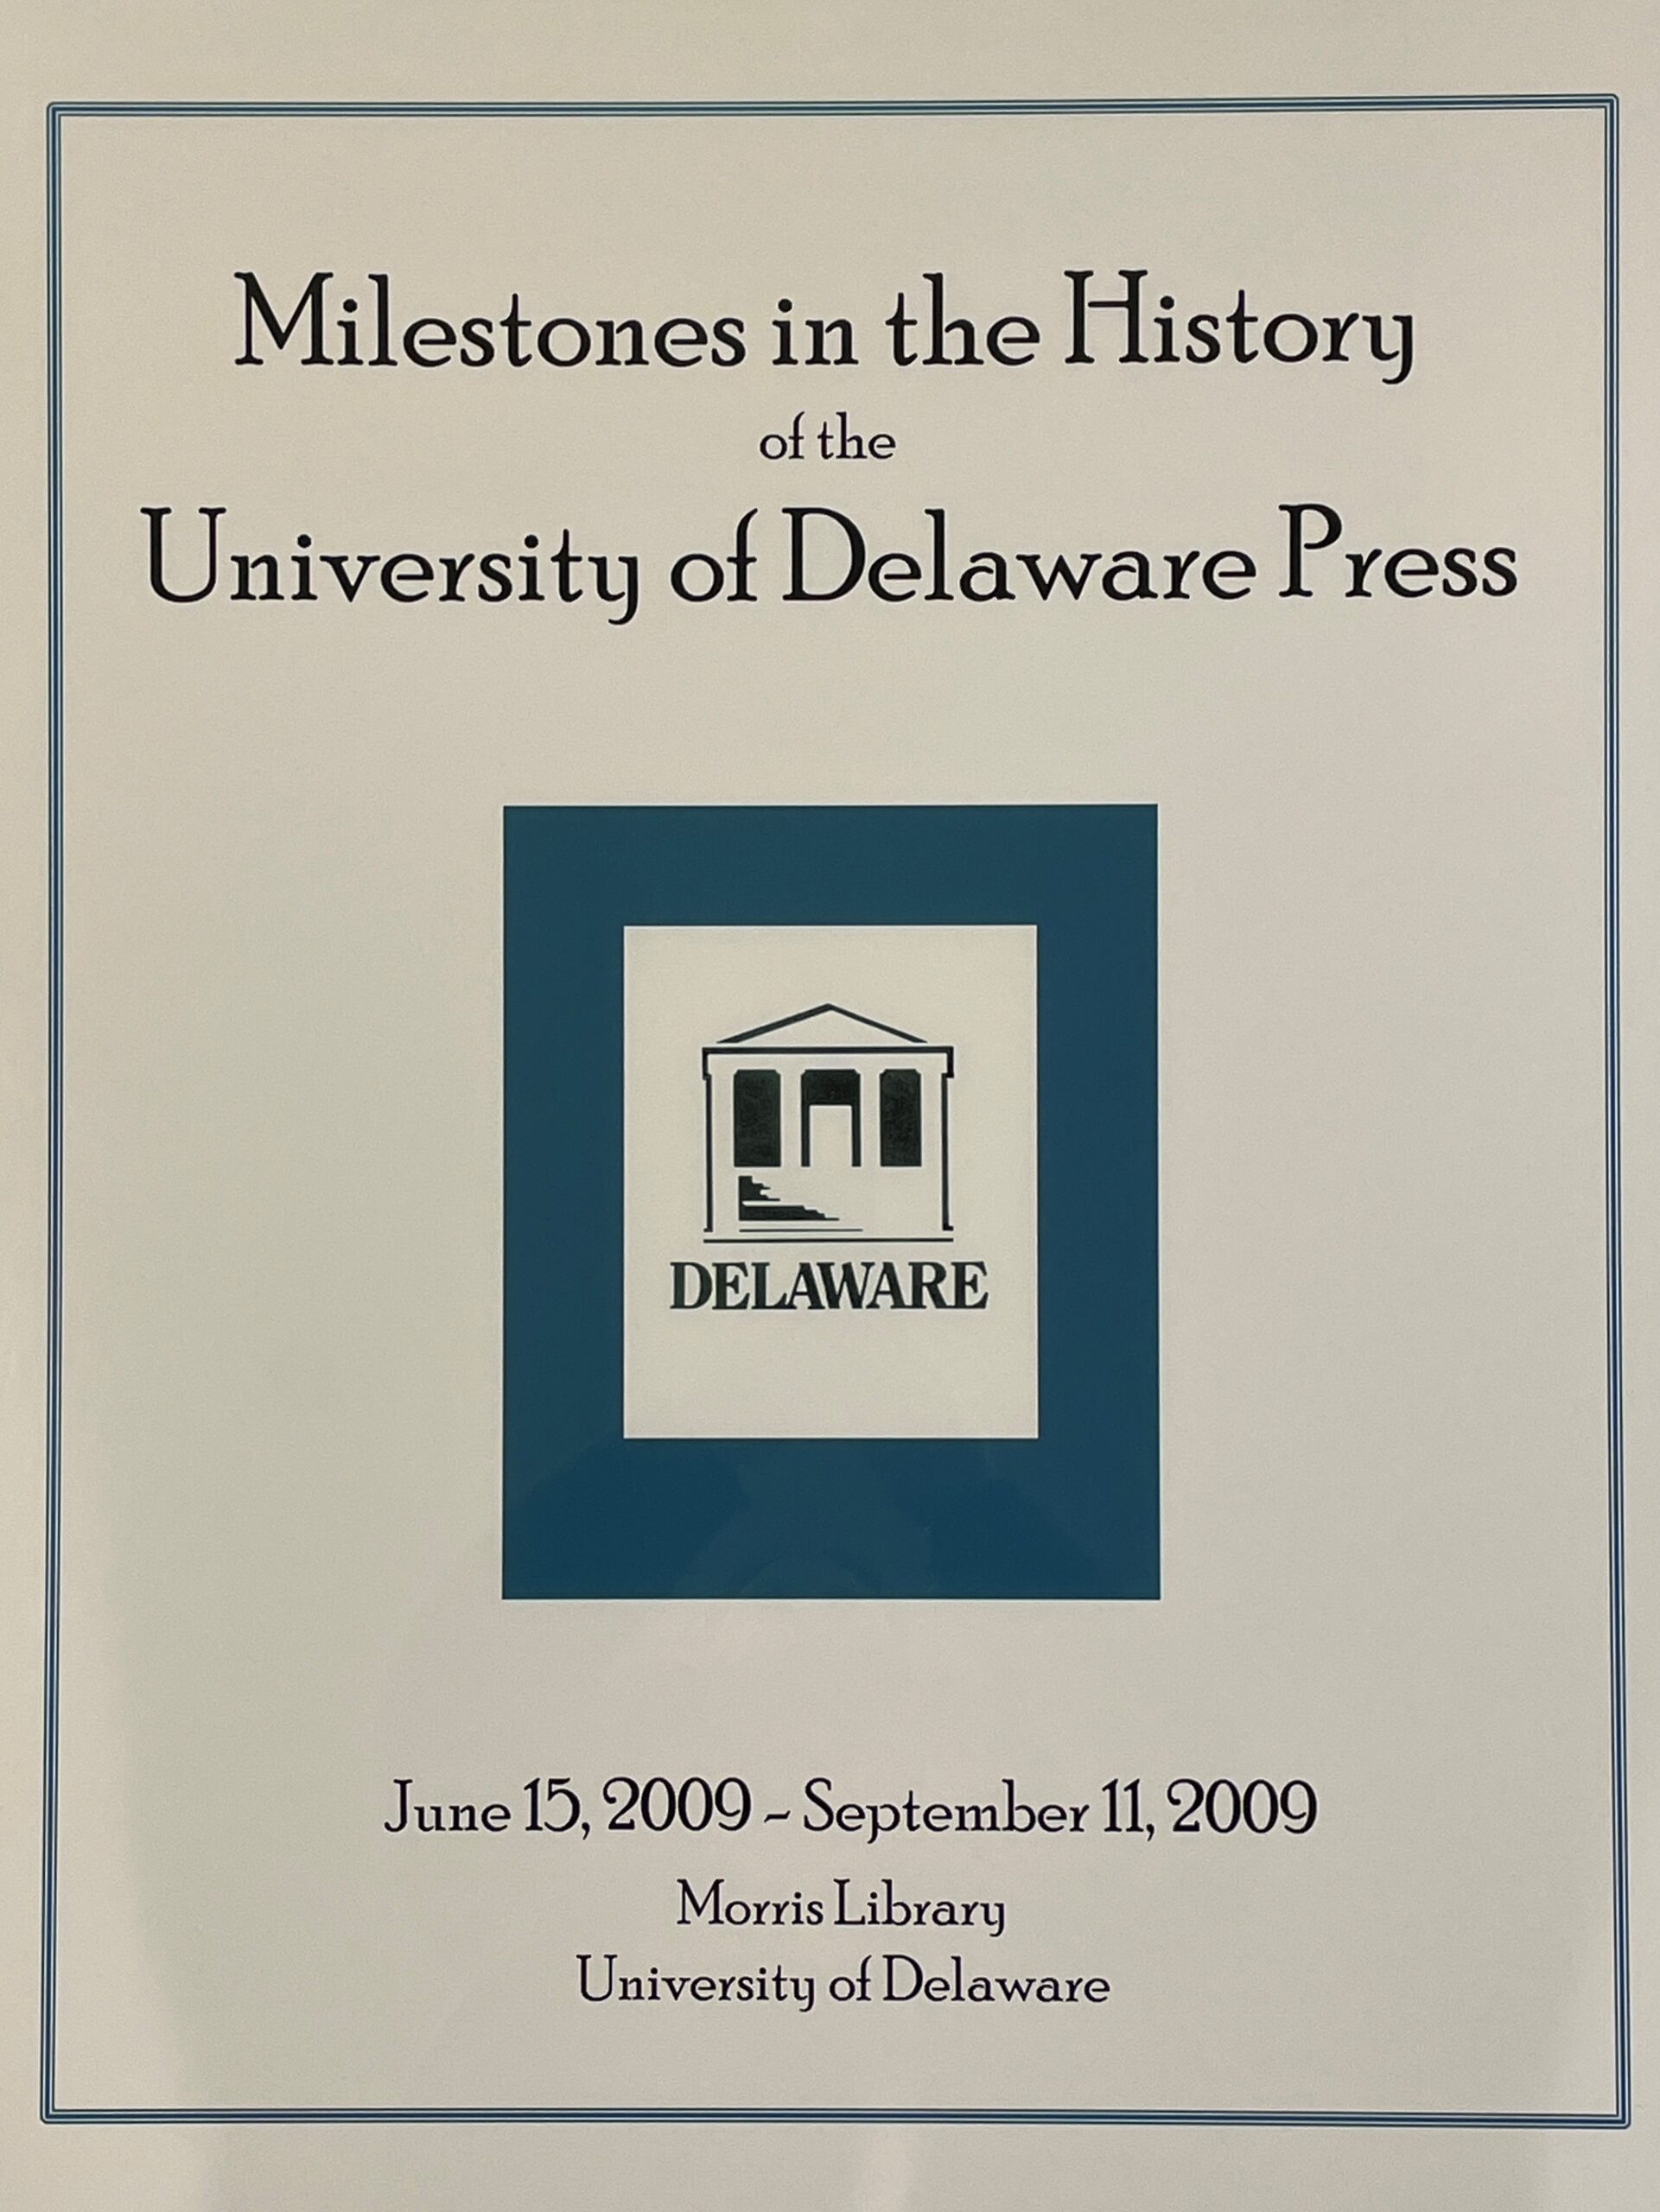 2009 UD Press Exhibit Poster